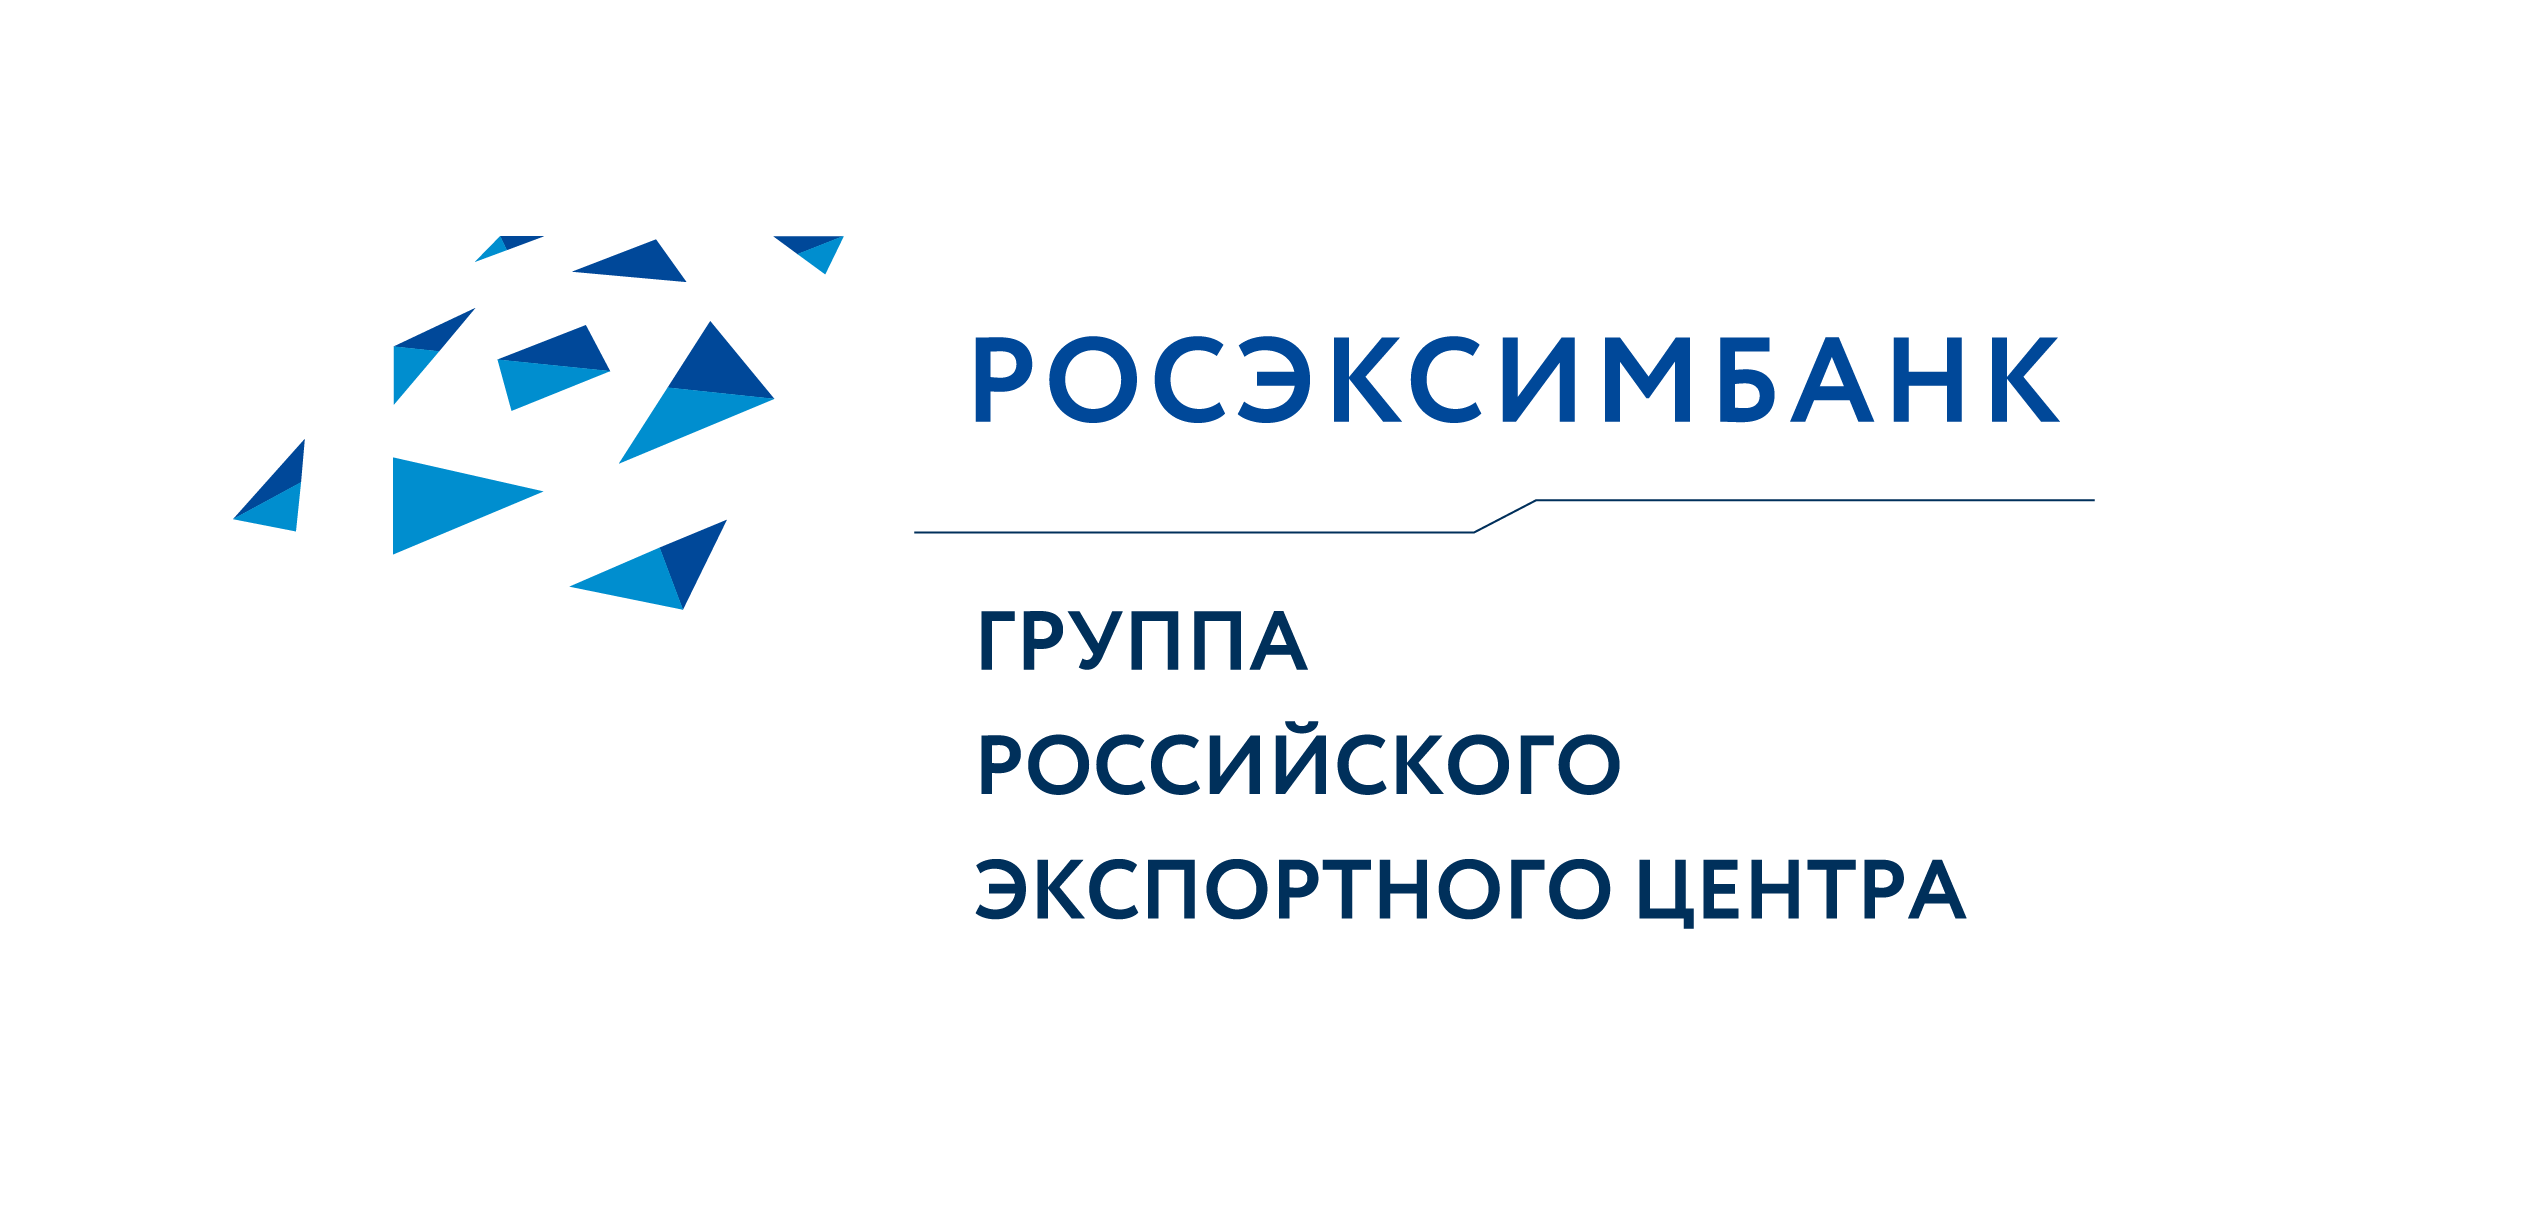 ВЭБ.РФ - РЭЦ - Росэксимбанк - Государственный специализированный Российский экспортно-импортный банк